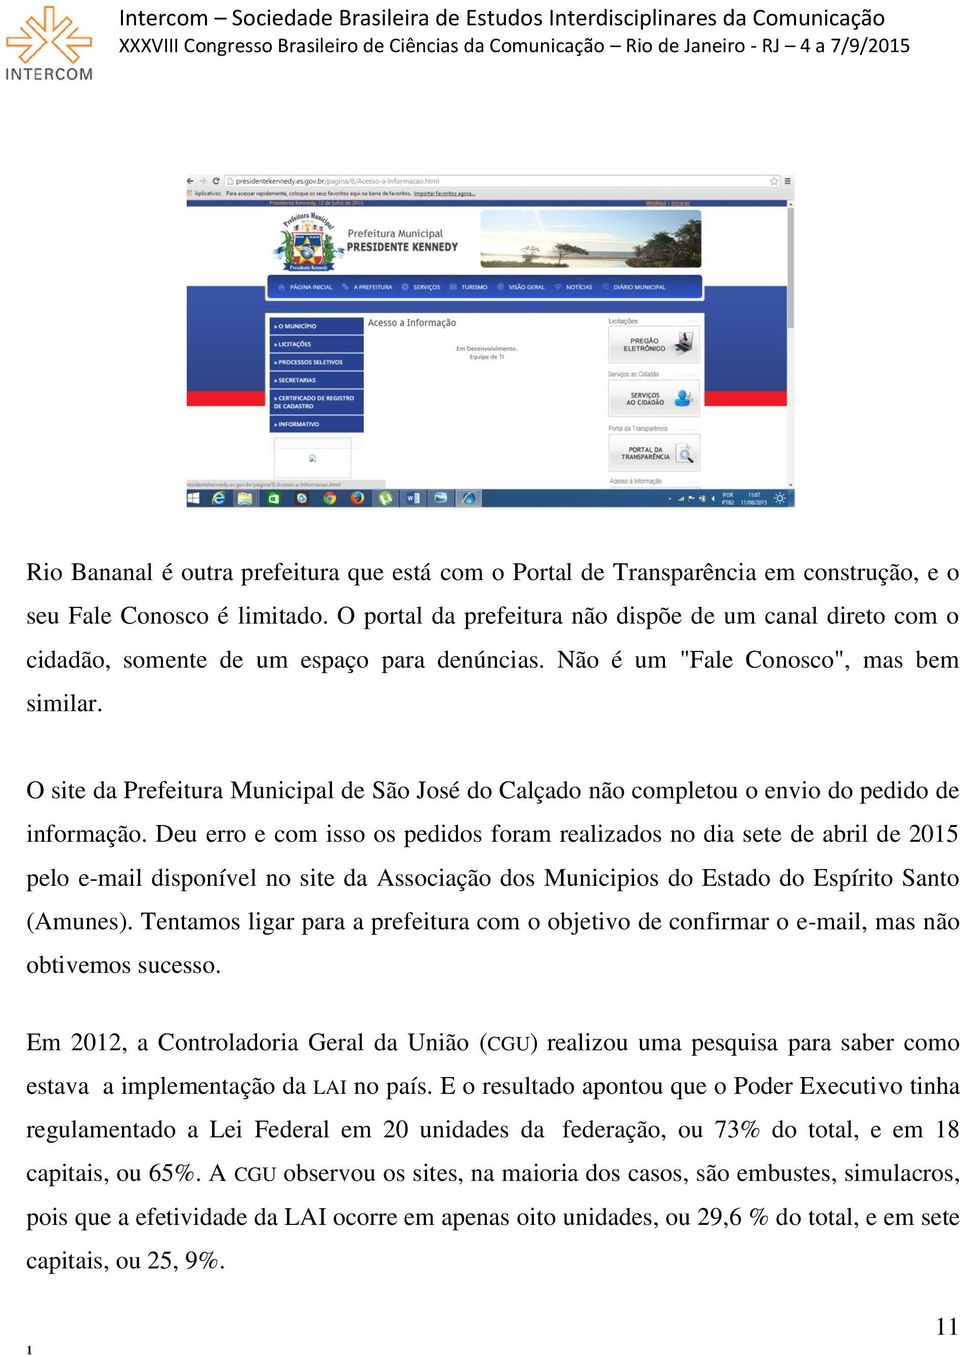 O site da Prefeitura Municipal de São José do Calçado não completou o envio do pedido de informação.